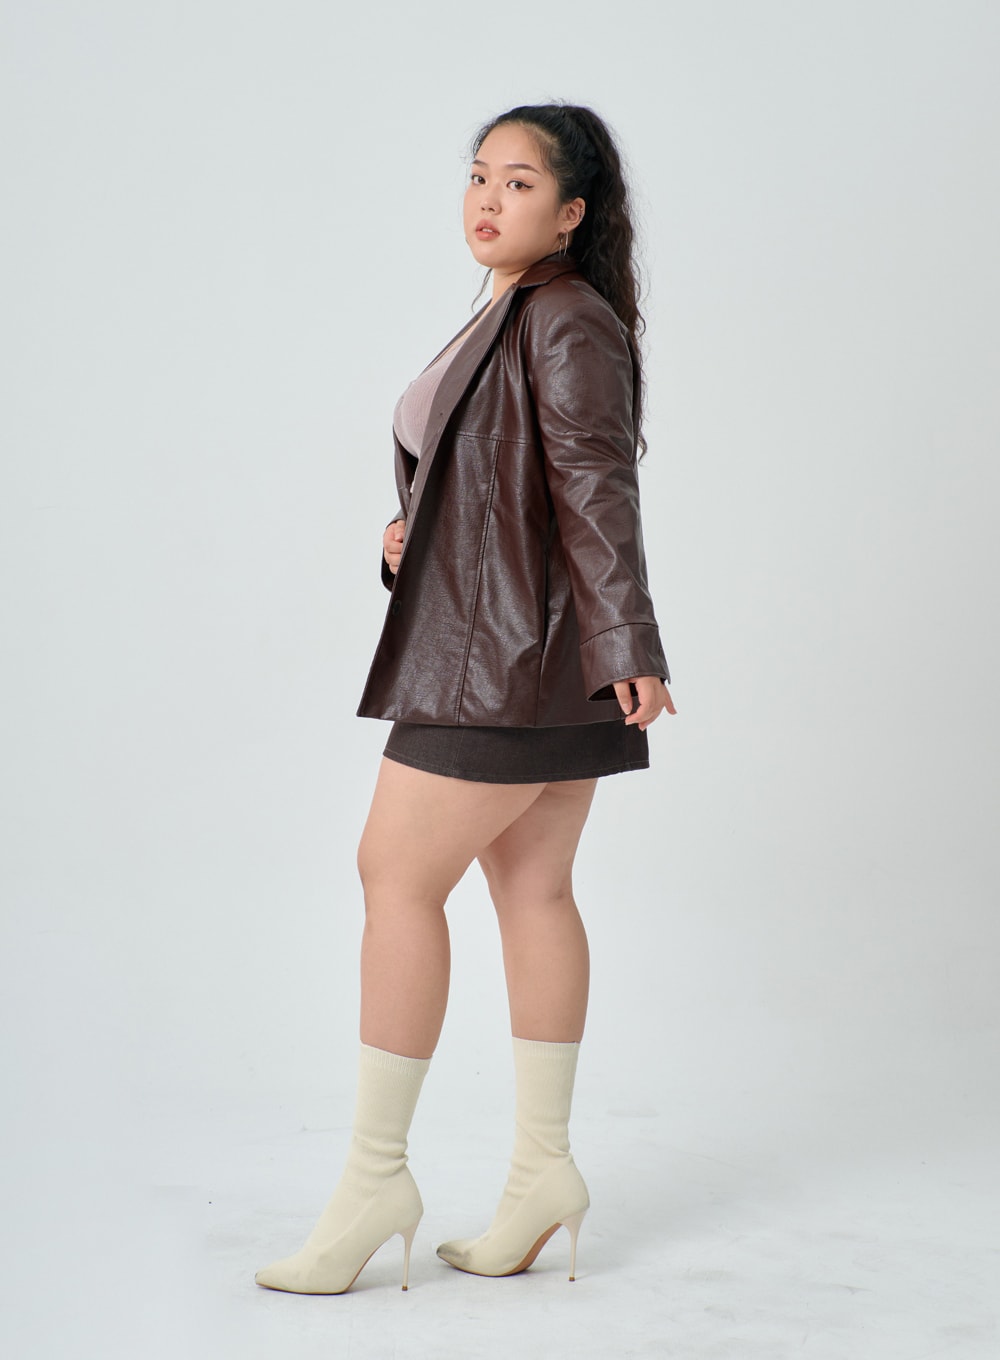 Plus Size Women Pink Leather Jacket | Stylish Fashion Jacket – Jacket Hunt